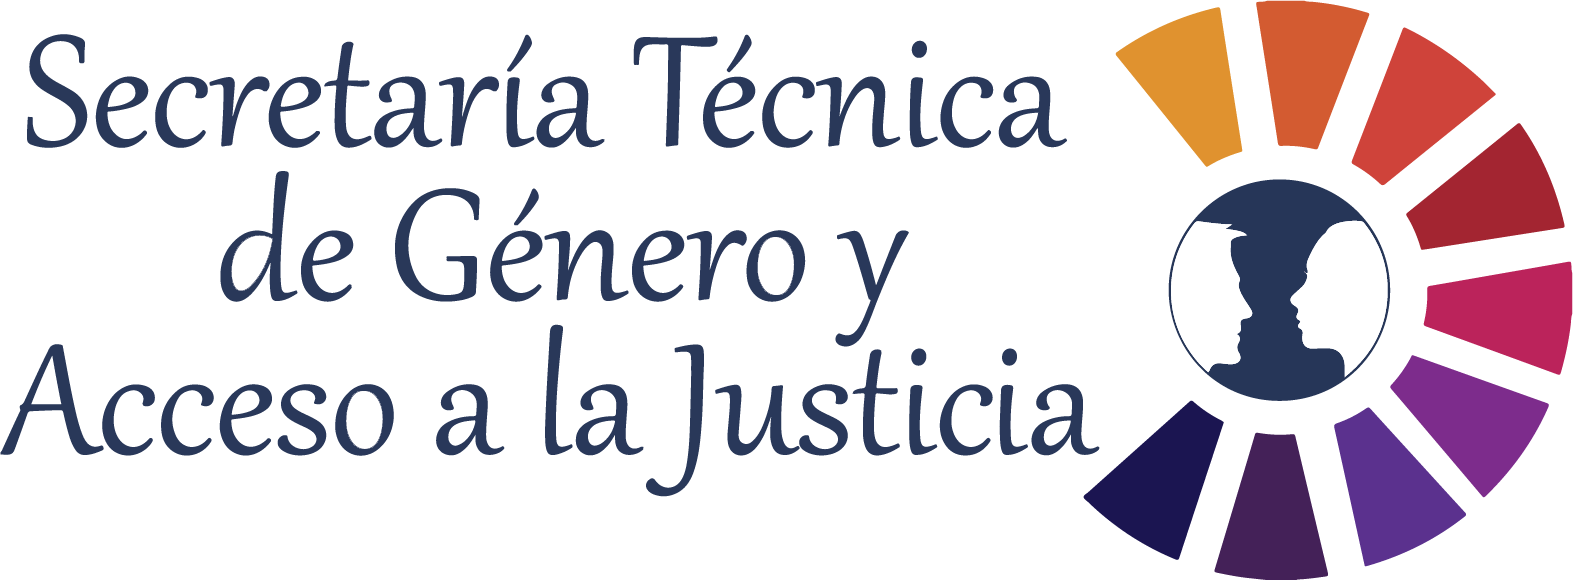 Logo Secretaría Técnica de Género y Acceso a la Justicia